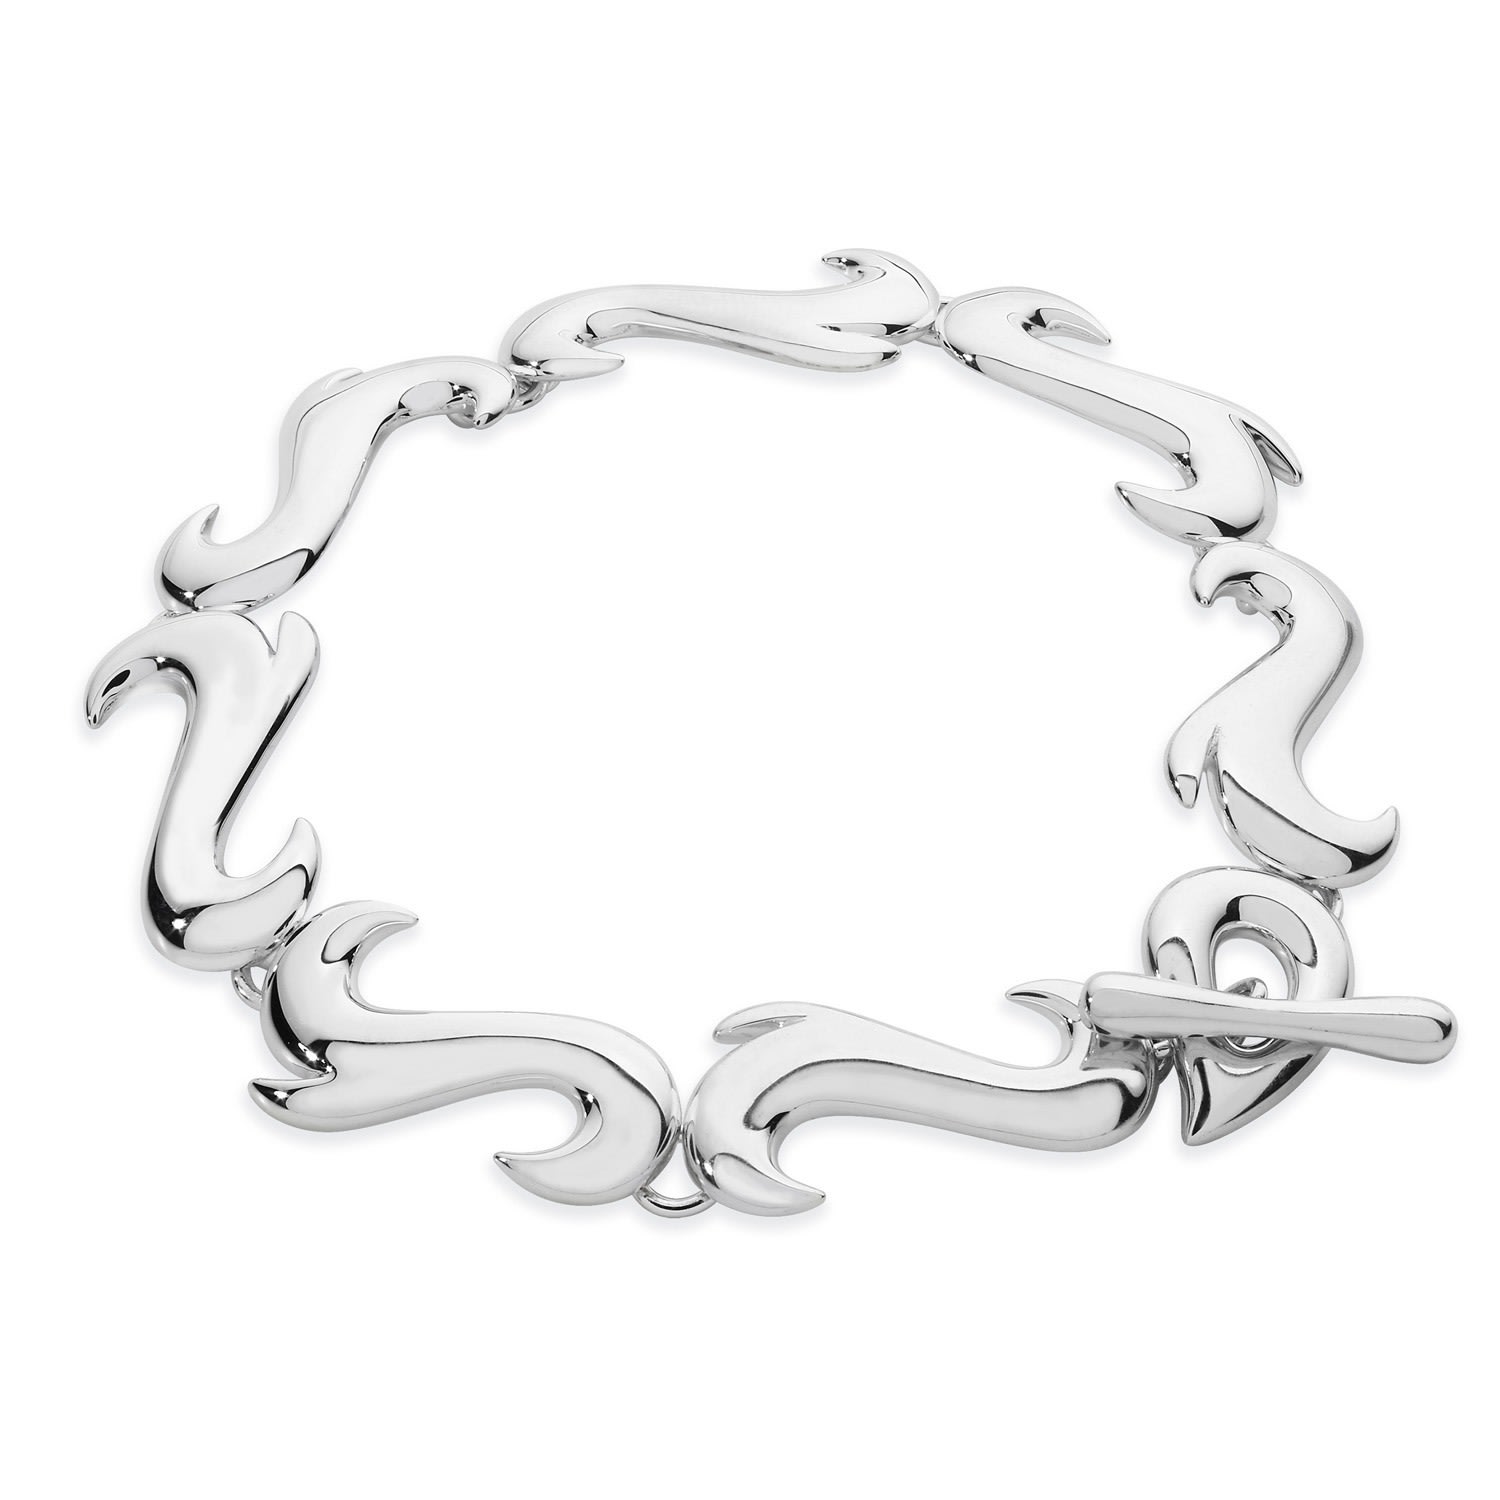 Lucy Quartermaine Women's Silver Element Air Bracelet